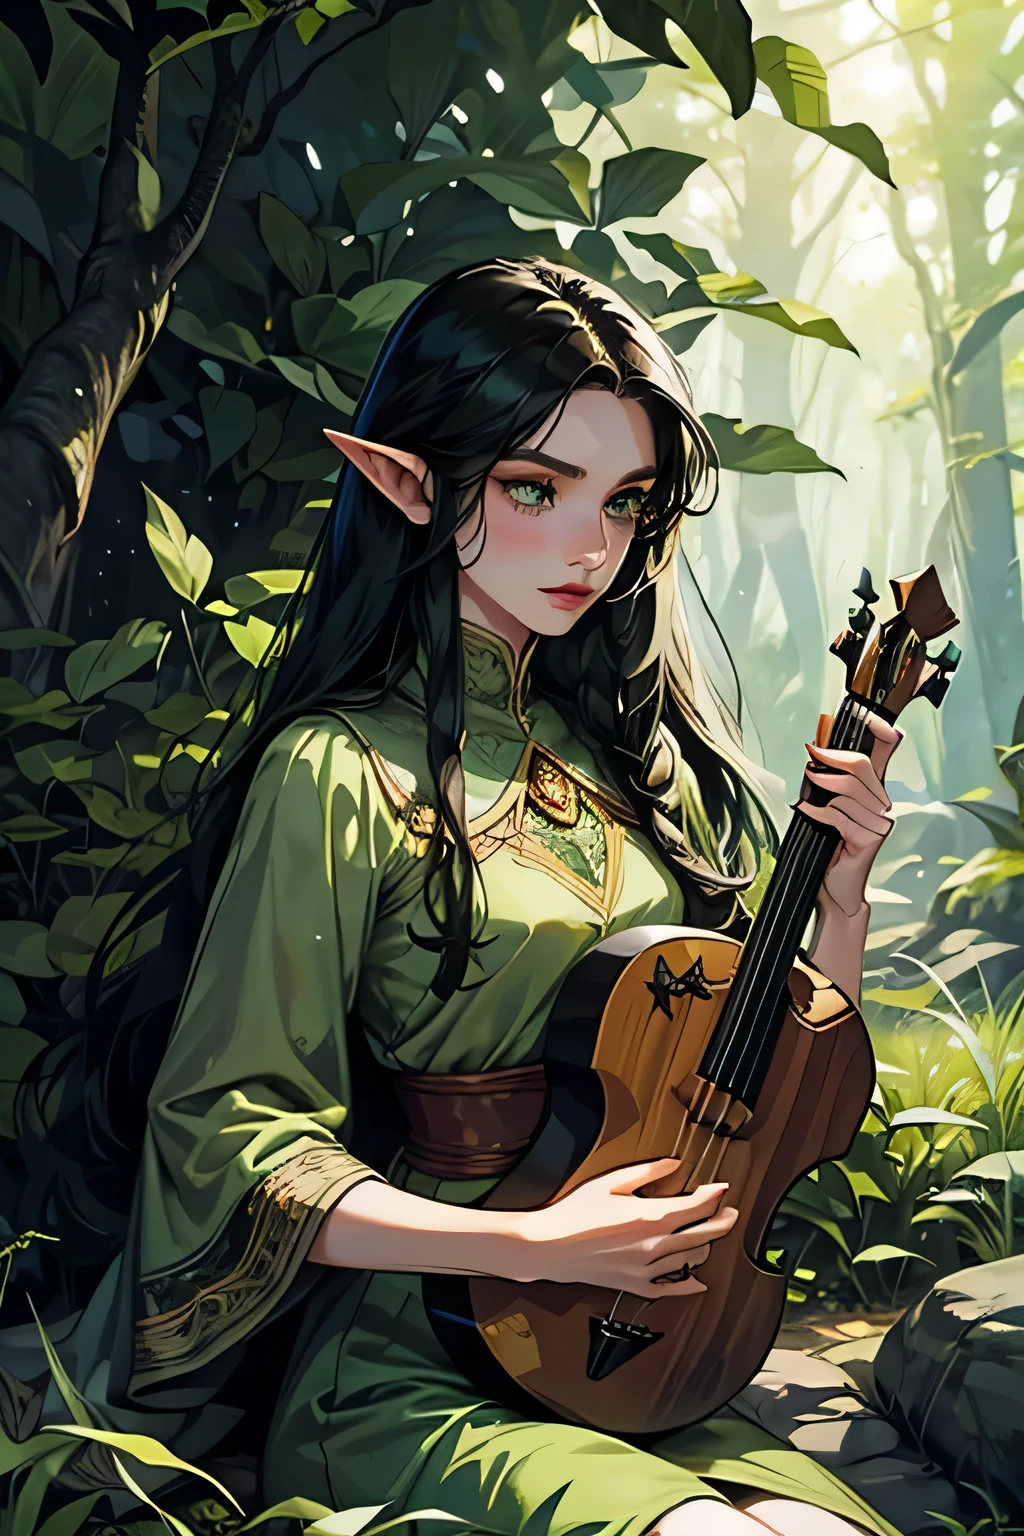 有著迷人的綠眼睛和長長的黑髮的女人, 獨自坐在寧靜森林中長滿青苔的岩石上, 露出精靈般尖尖的耳朵, 他的臉上有許多雀斑, 她 est barde, 手裡拿著一把美麗的琵琶, 旁邊有一把精緻的豎琴&#39;她. 穿著盔甲的獵人